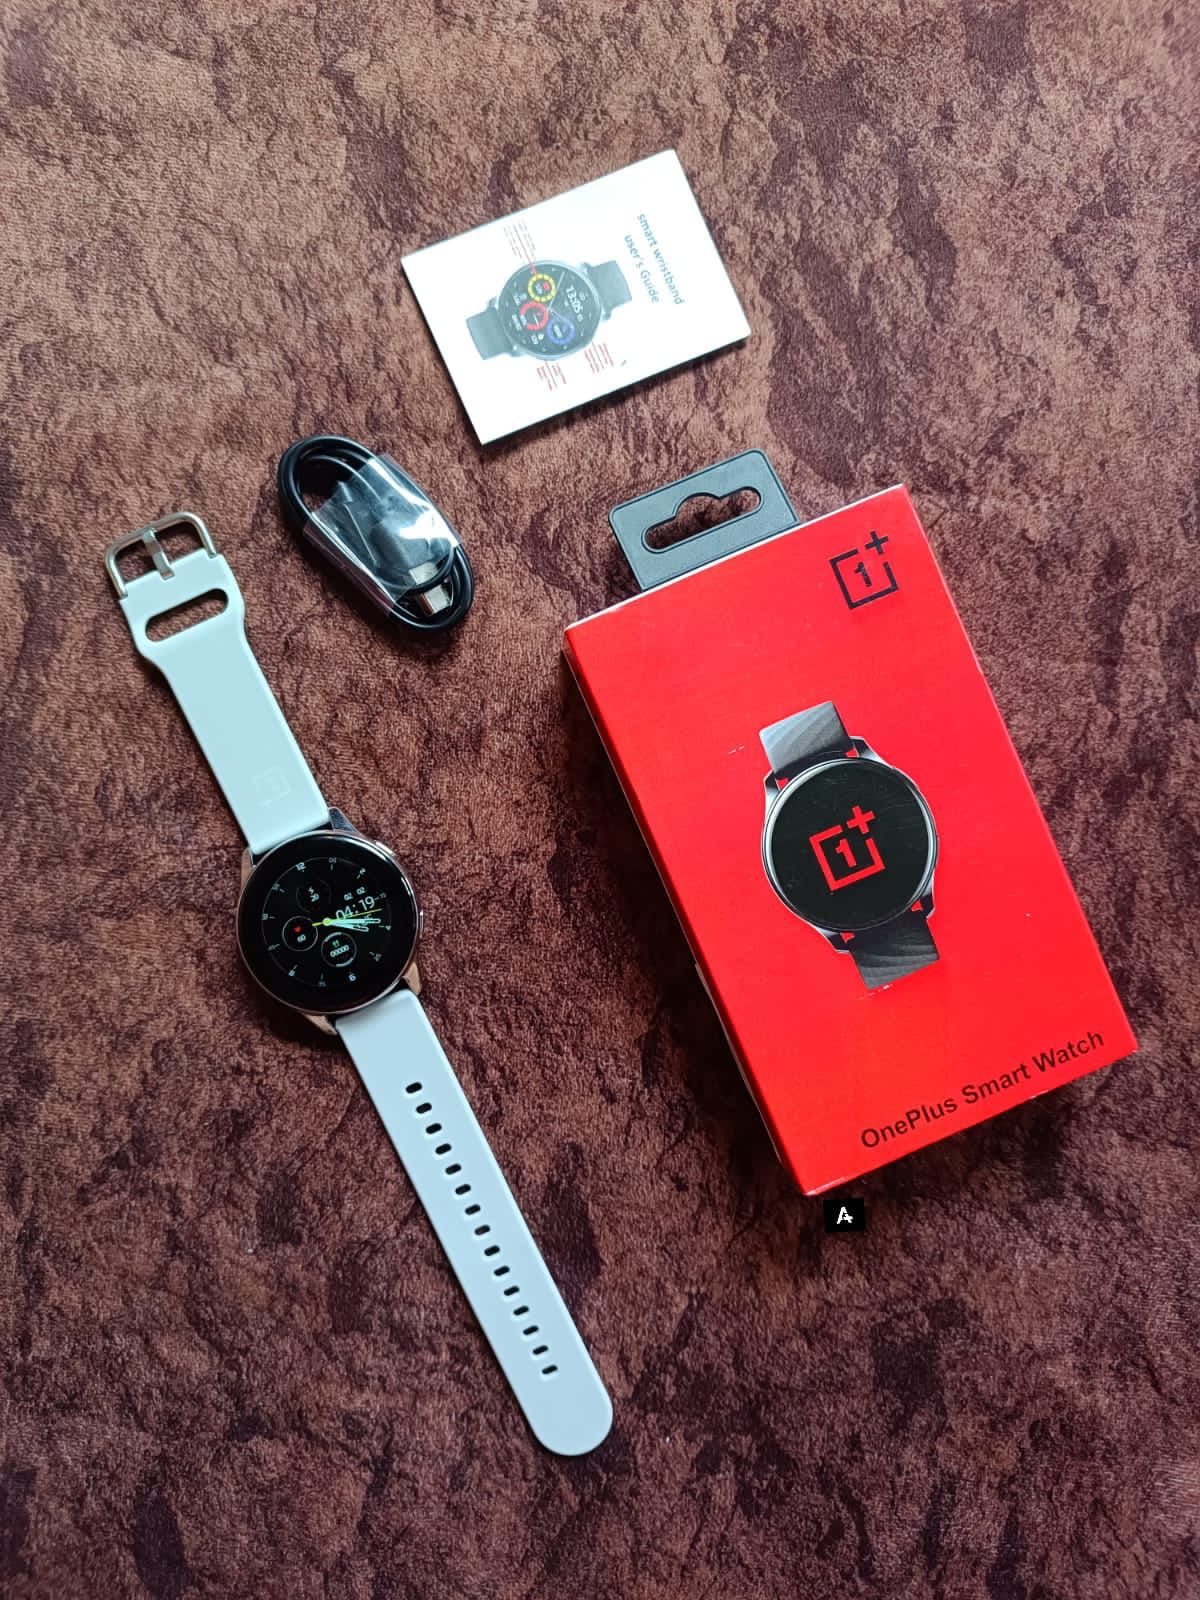 Oneplus Smart Watch Round Display